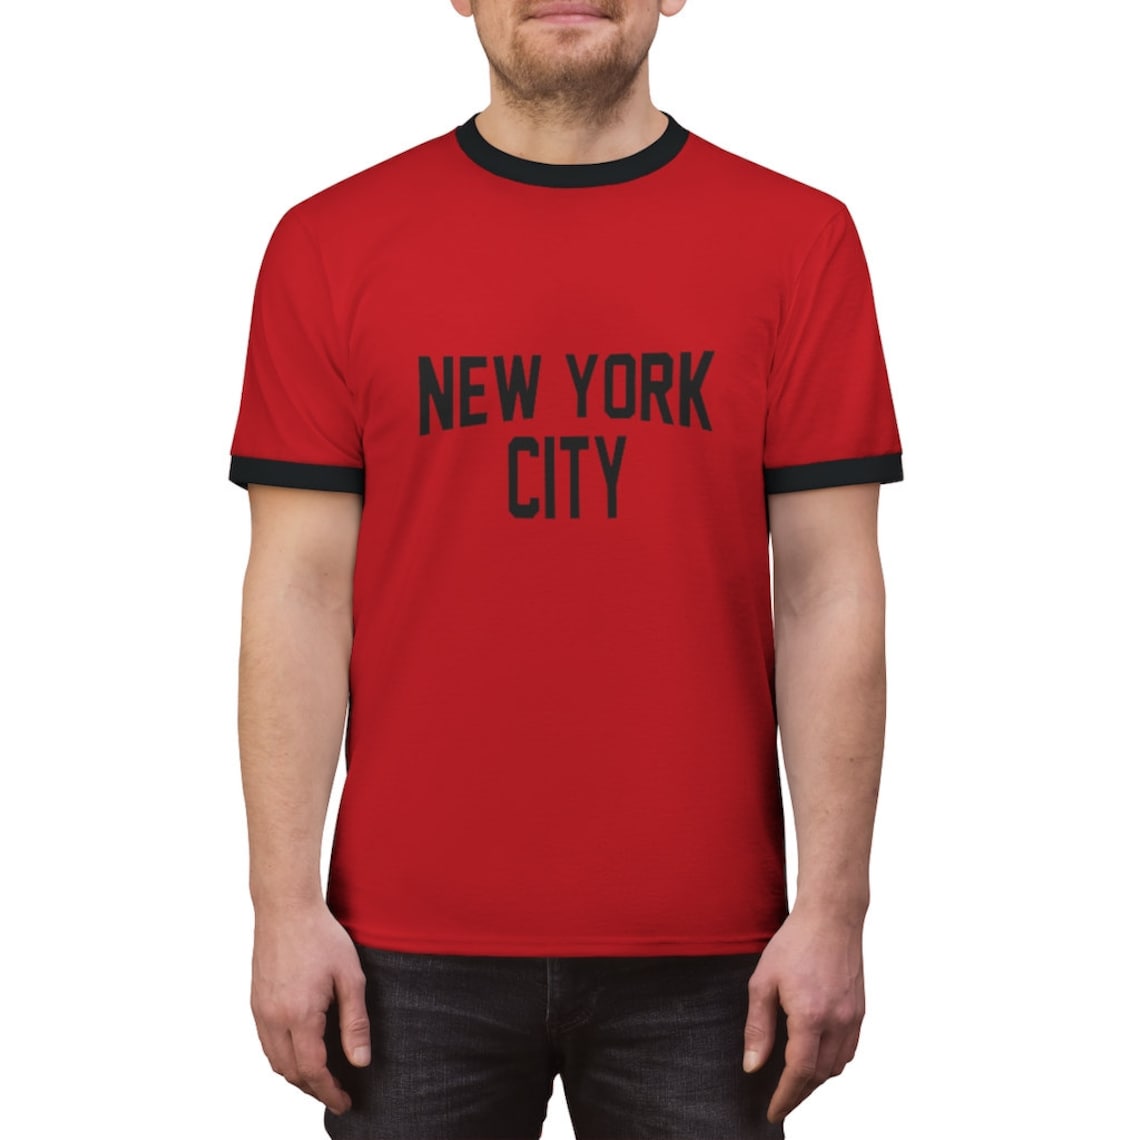 New York City John Lennon the Beatles Ringer Tee T-shirt | Etsy